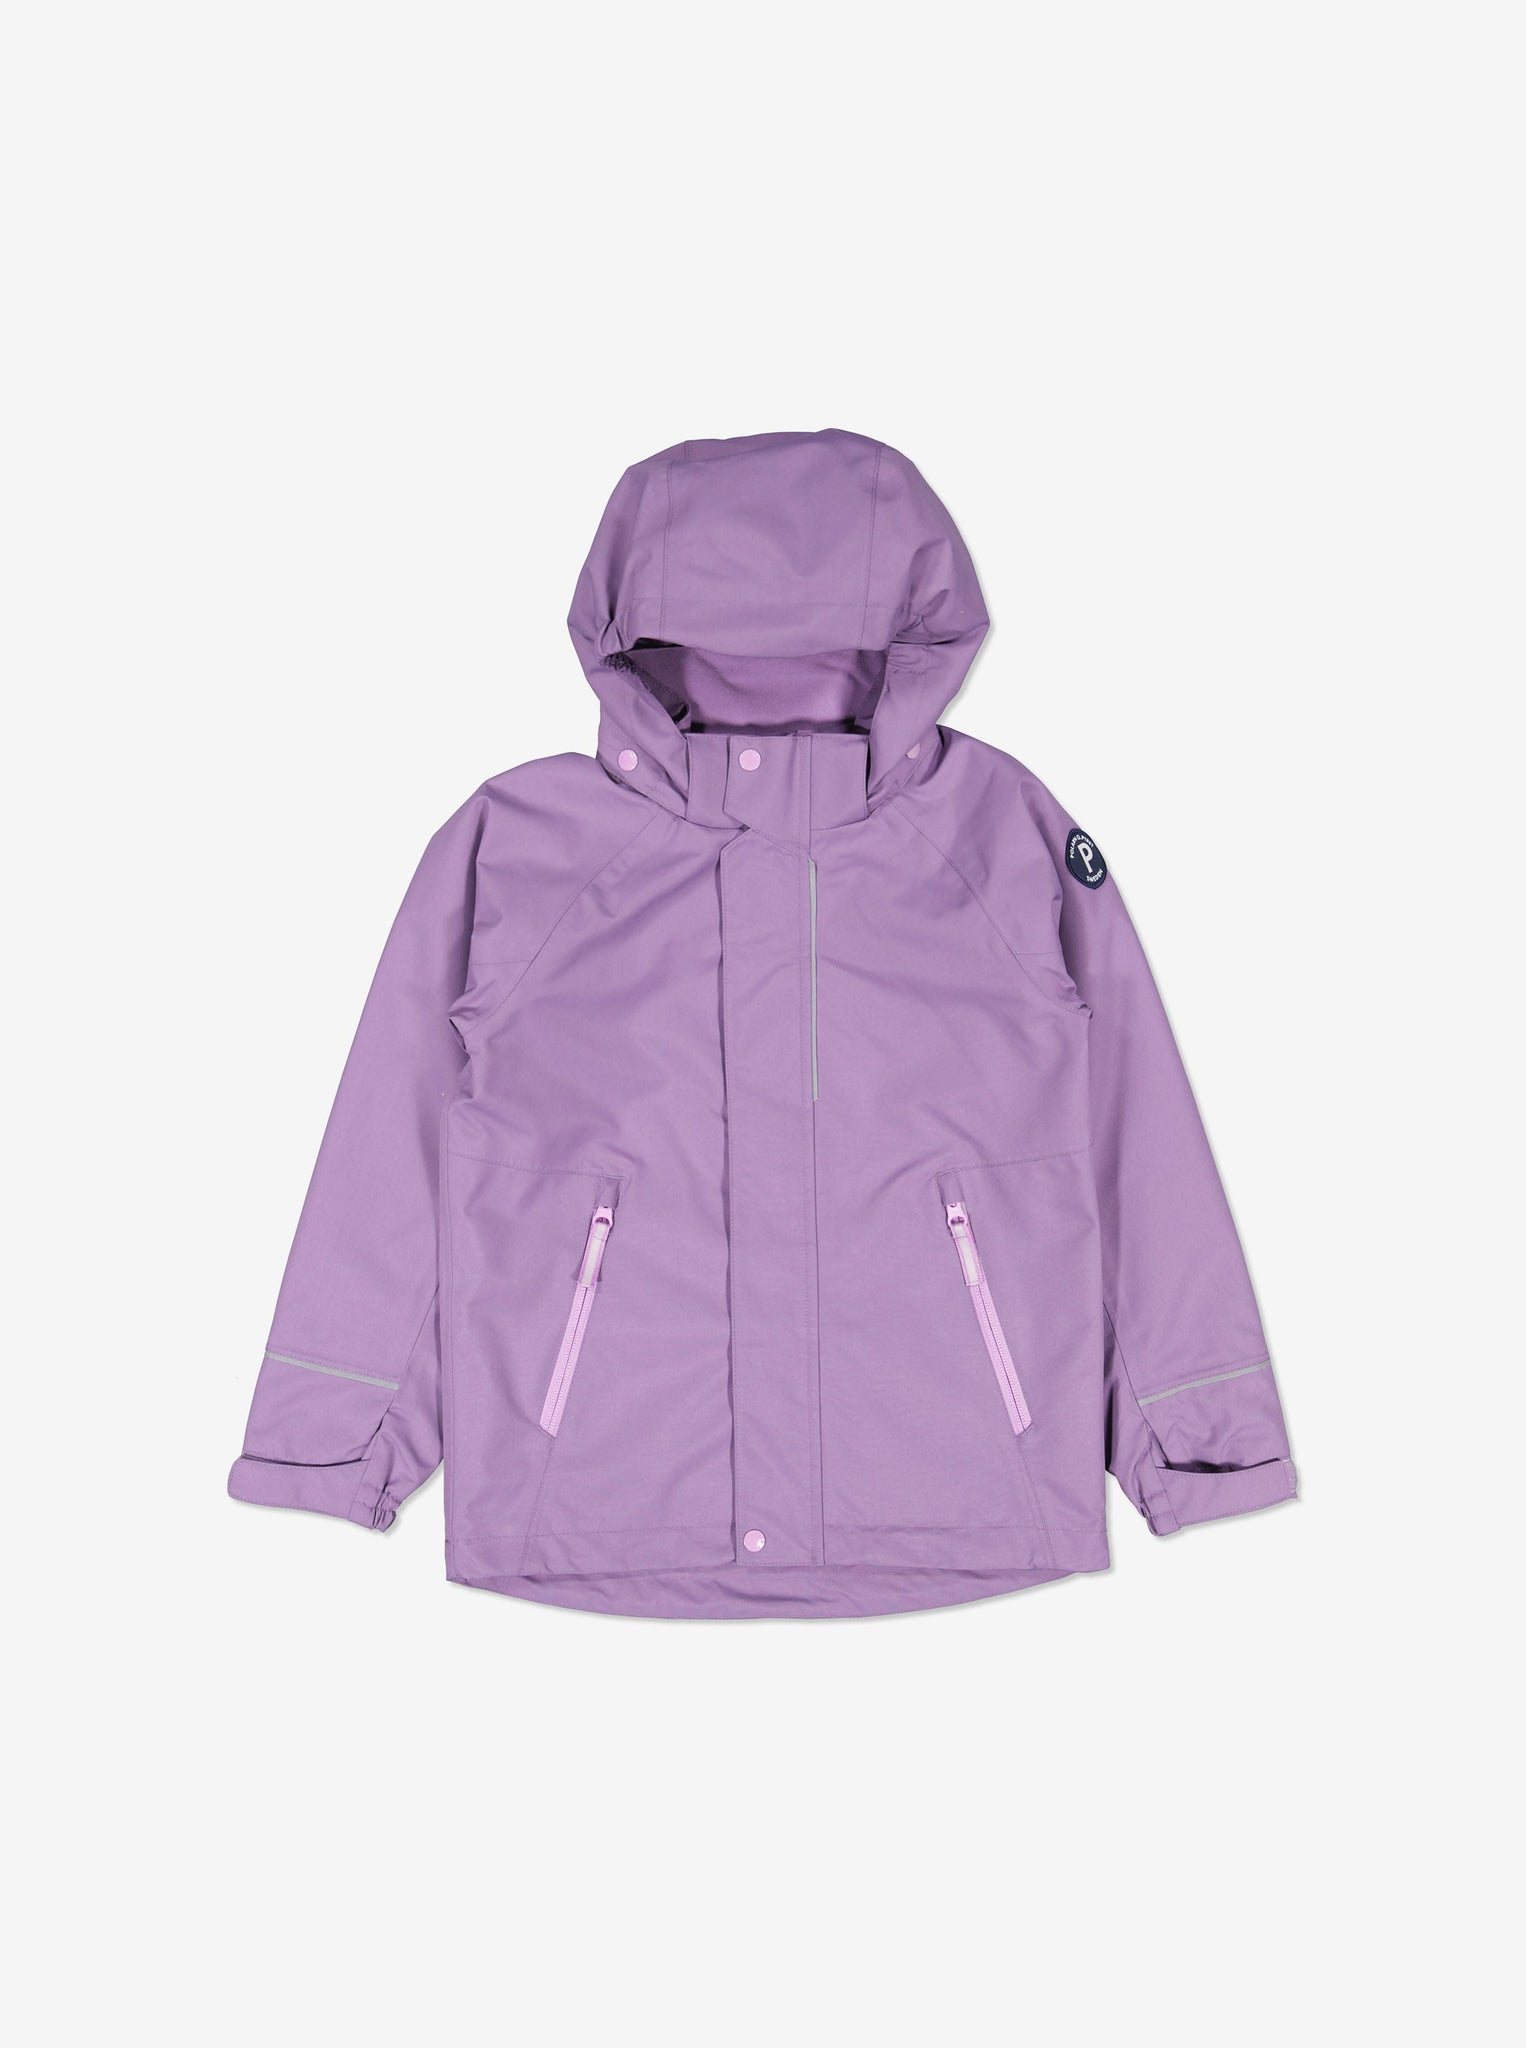 Purple Kids Waterproof Jacket from Polarn O. Pyret Kidswear.  Eco friendly kids jackets